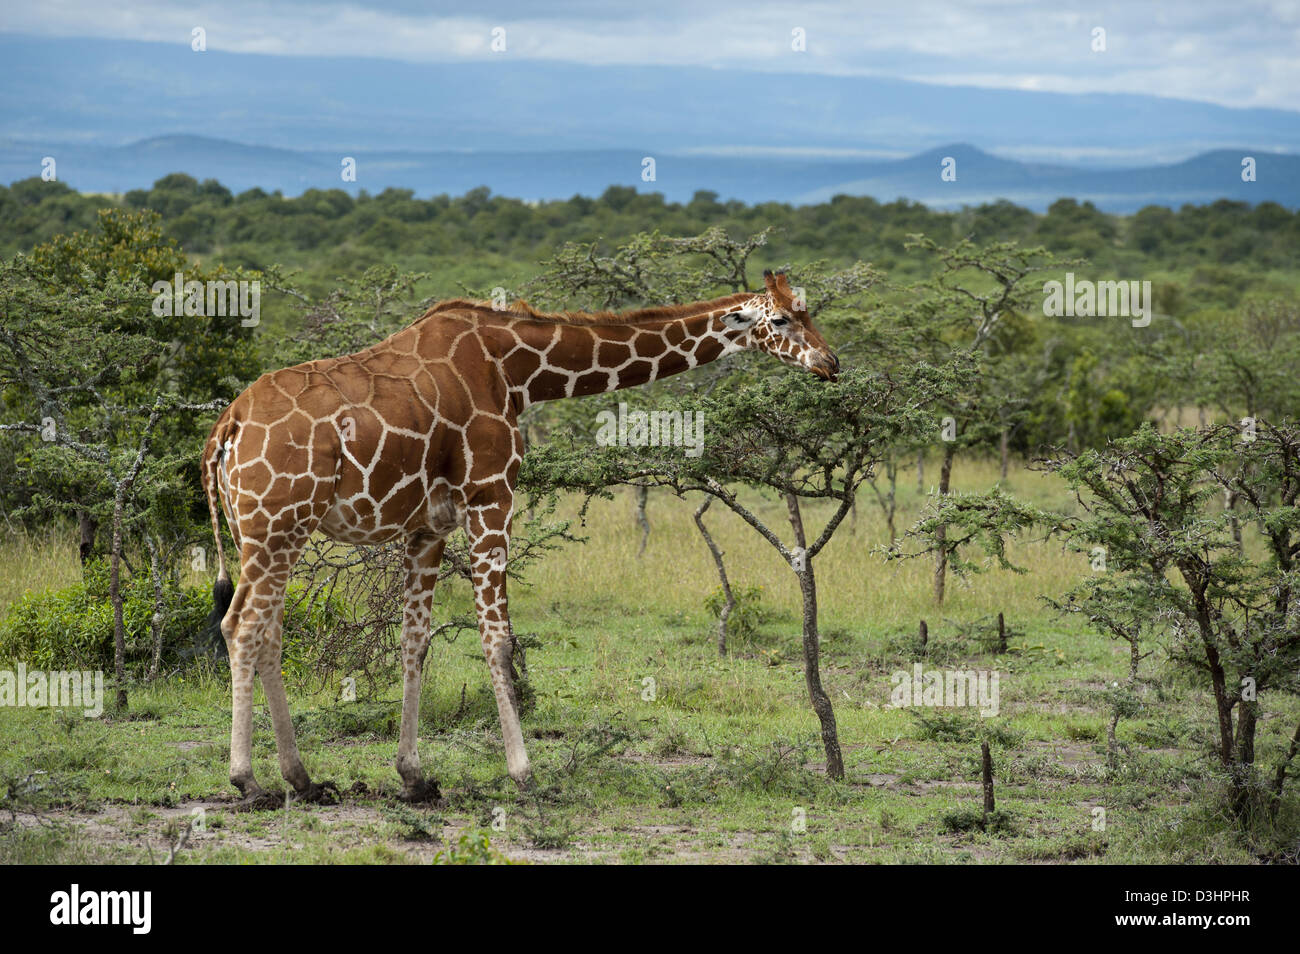 Jirafa reticulada ( Giraffa camelopardalis reticulata), Ol Pejeta Wildlife Conservancy, Laikipia, Kenya Foto de stock